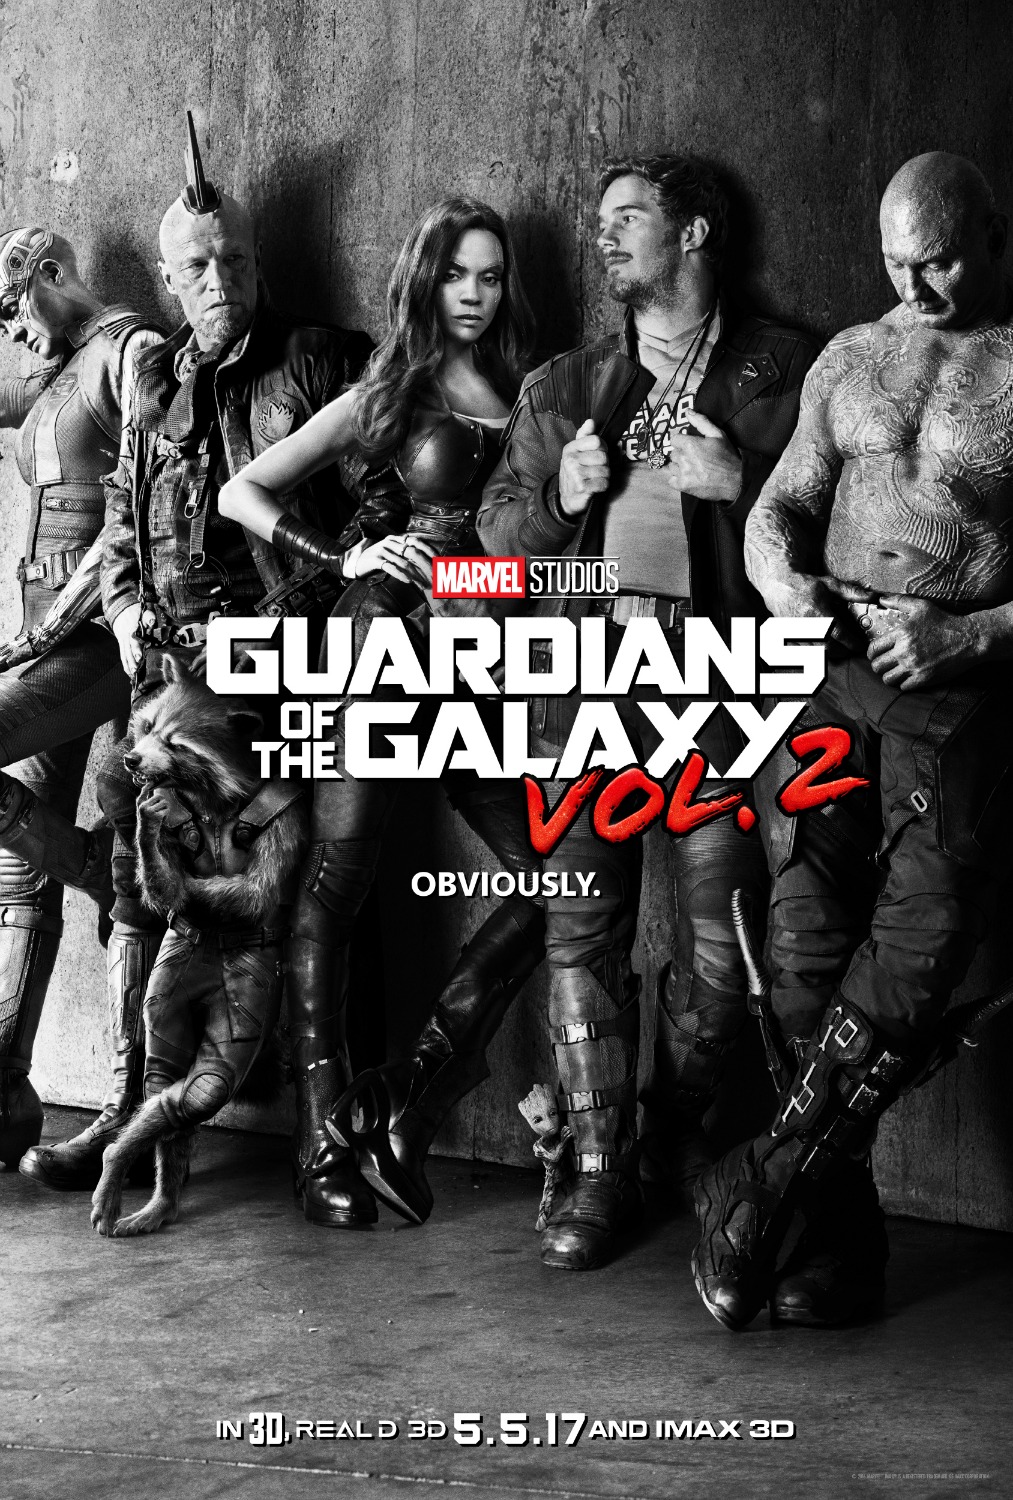 Guardians Of The Galaxy Vol. 2 Sneak Peek #GotGVol2